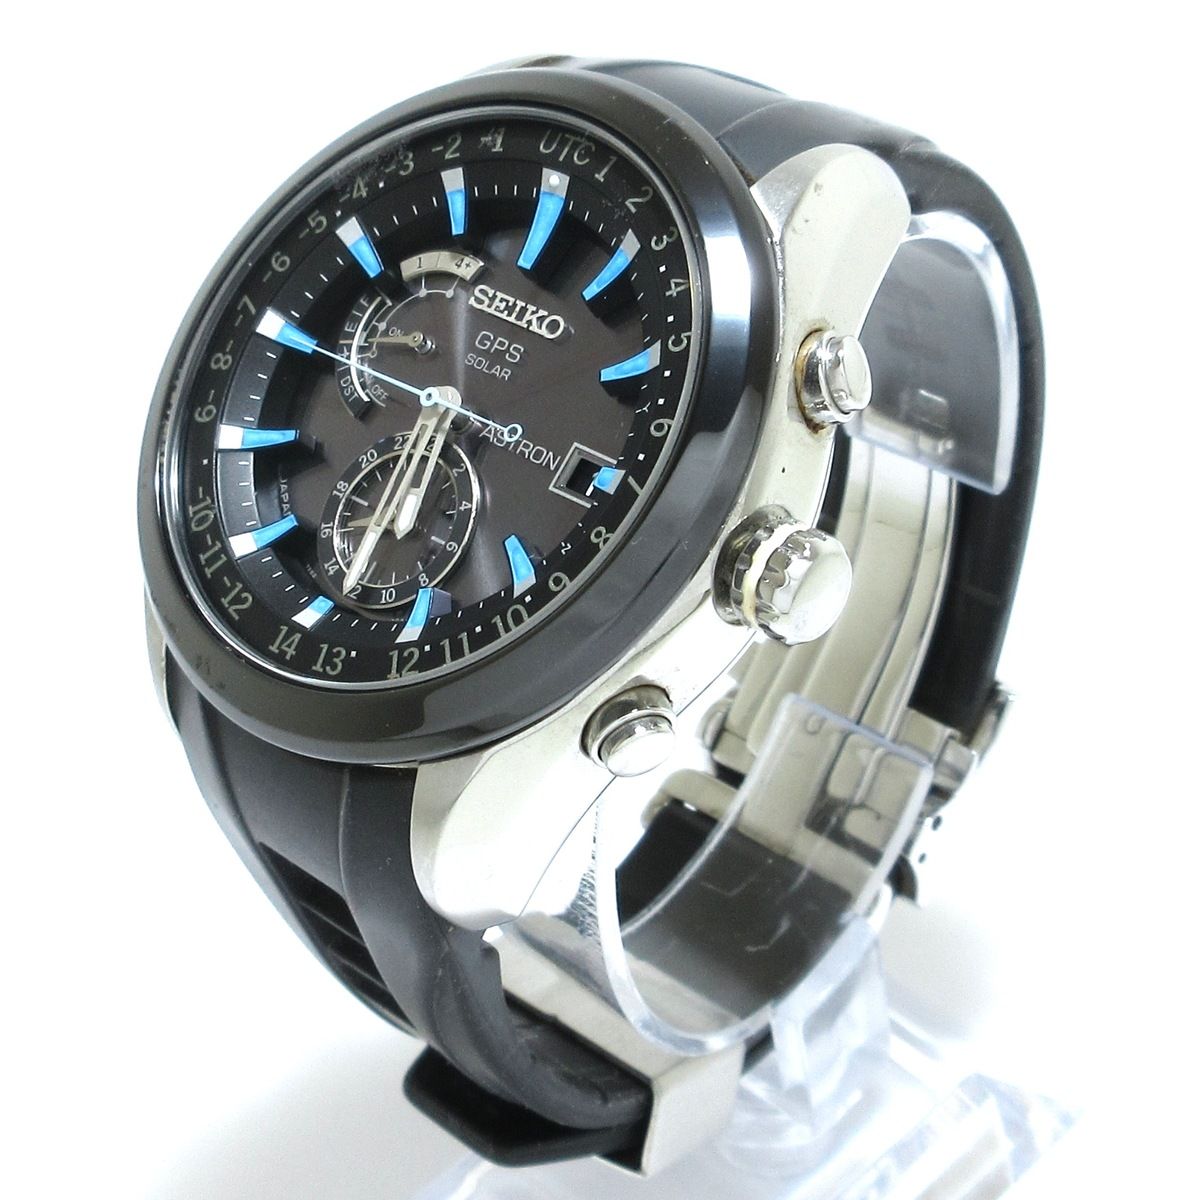 SEIKO(セイコー) 腕時計 ASTRON(アストロン) 7X52-0AB0 メンズ クロノ ...